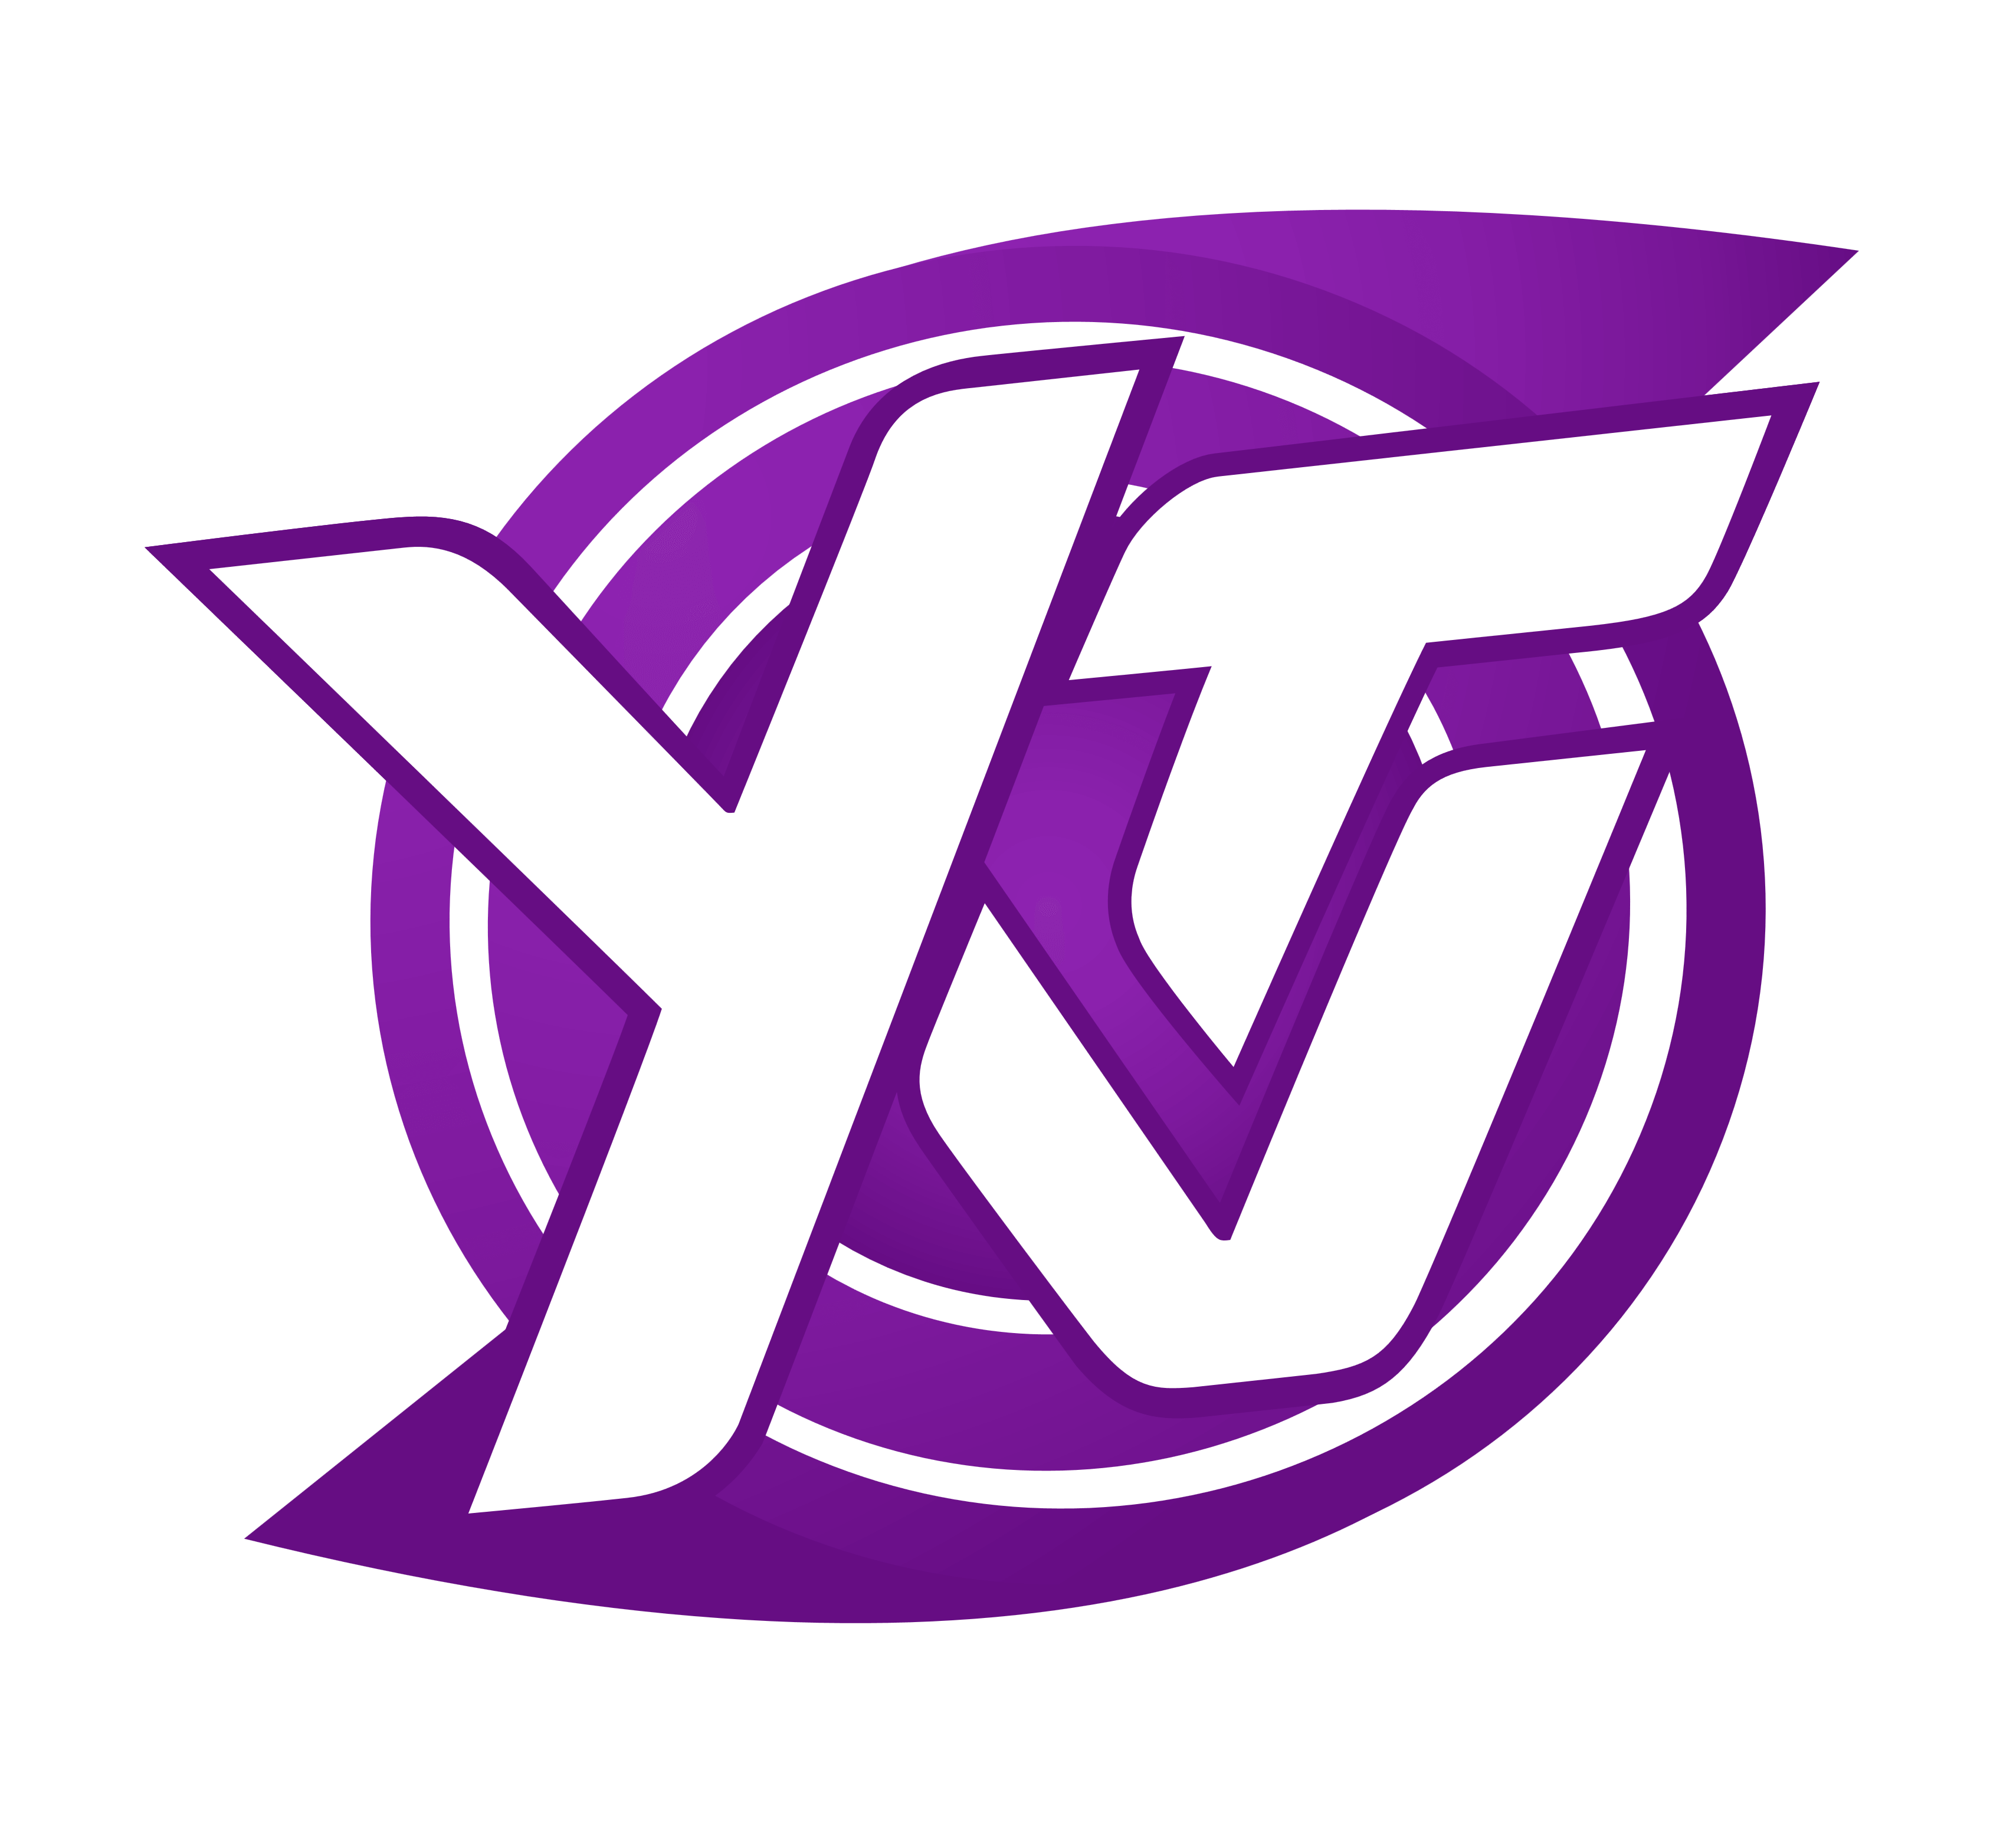 YTV logo, logotype